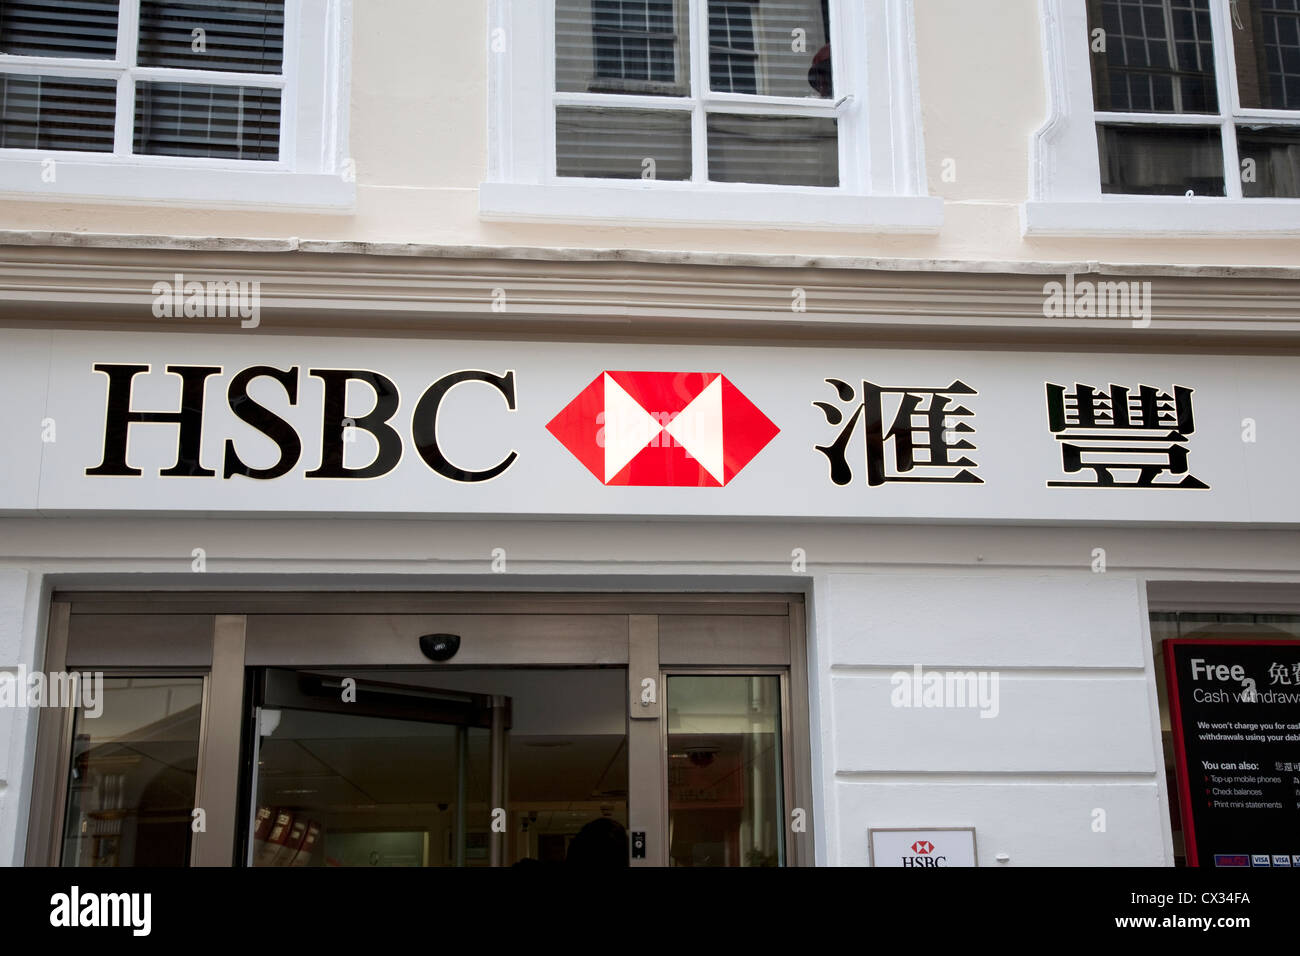 HSBC Bank Logo in English and Chinese, Soho, London, England, UK Stock Photo